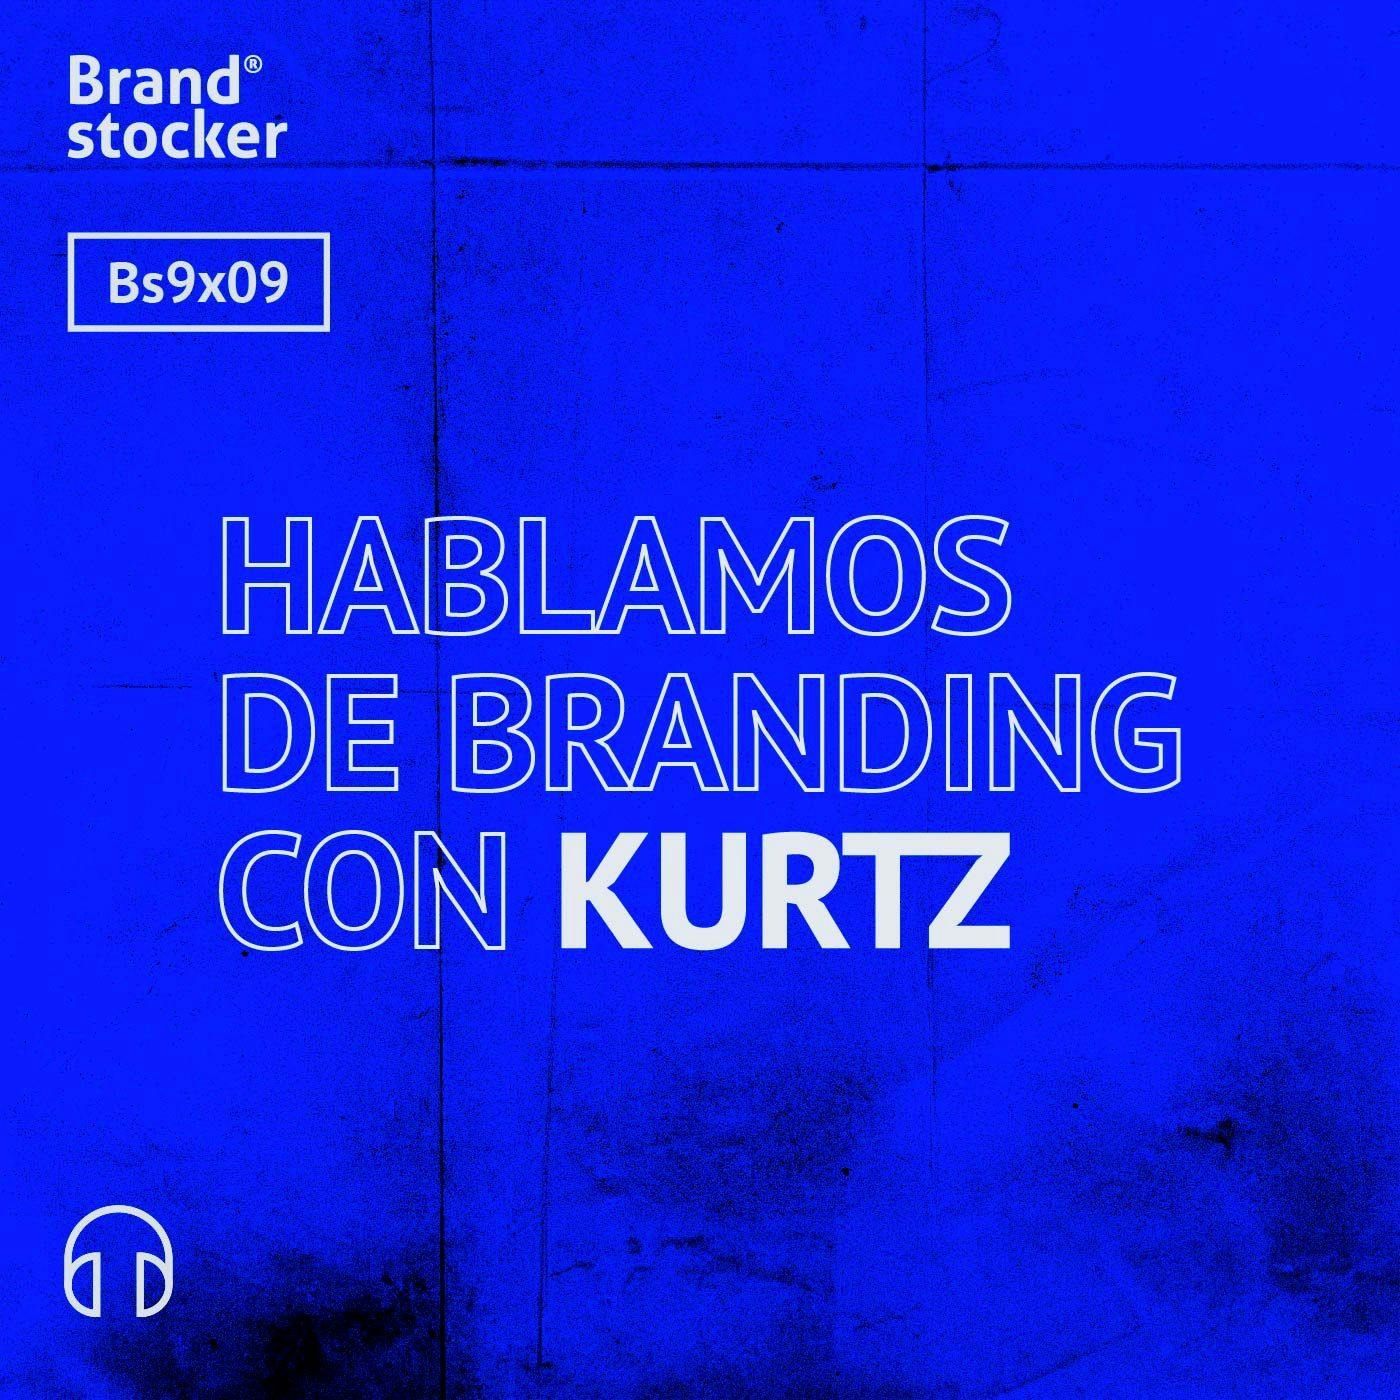 Bs9x09 - Hablamos de branding y Star Wars con Kurtz